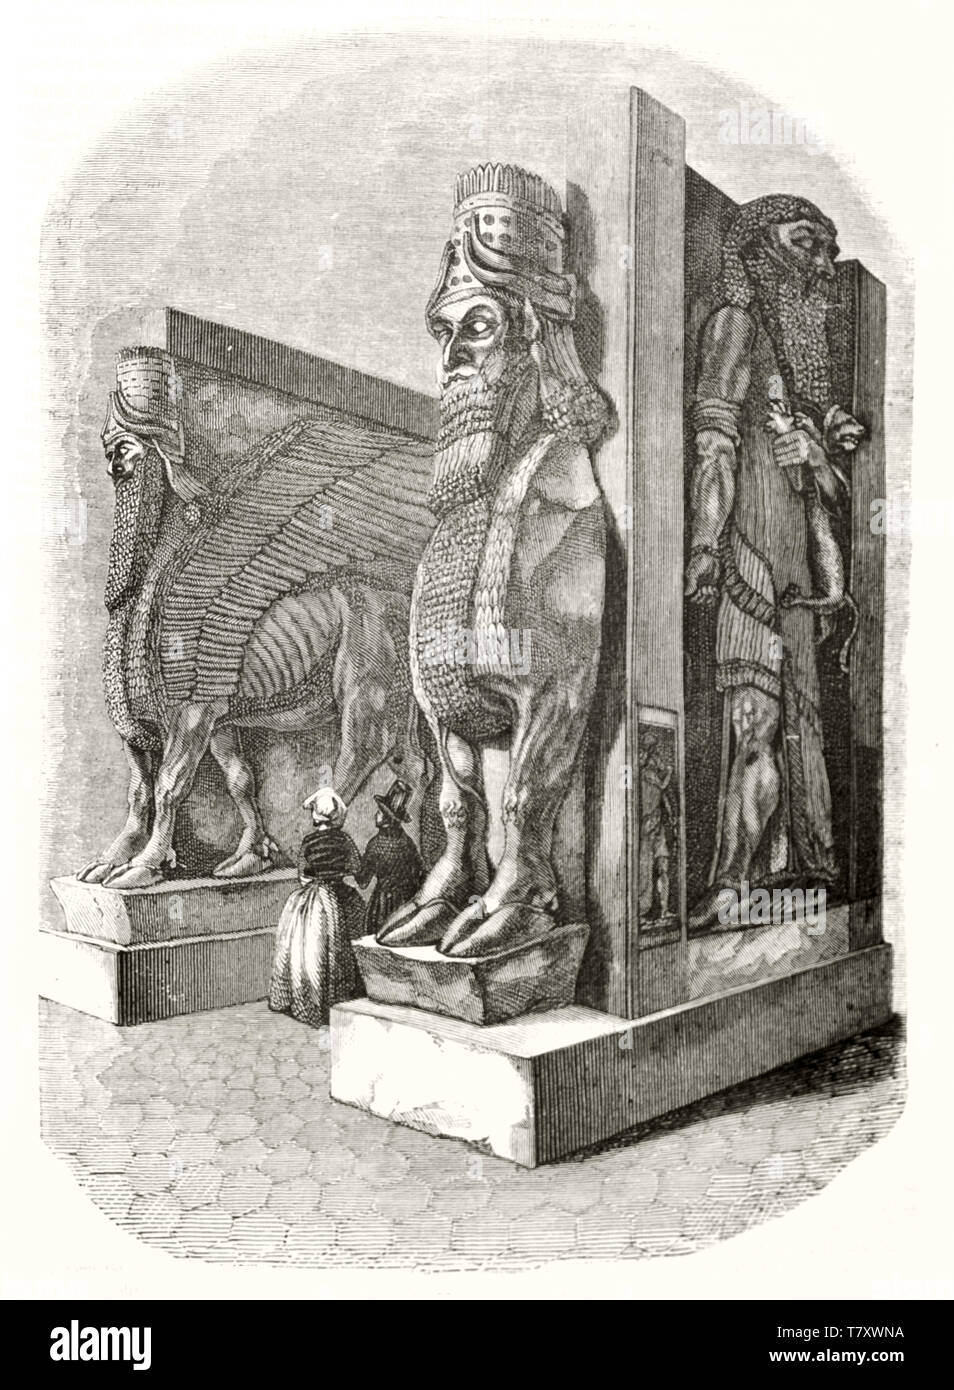 Dettaglio delle statue assire nella sala Assira nel museo del Louvre di Parigi. Attacco in toni di grigio con bordi sfumati. Da Marvy e Gauchard publ. su Magasin pittoresco Parigi 1848 Foto Stock